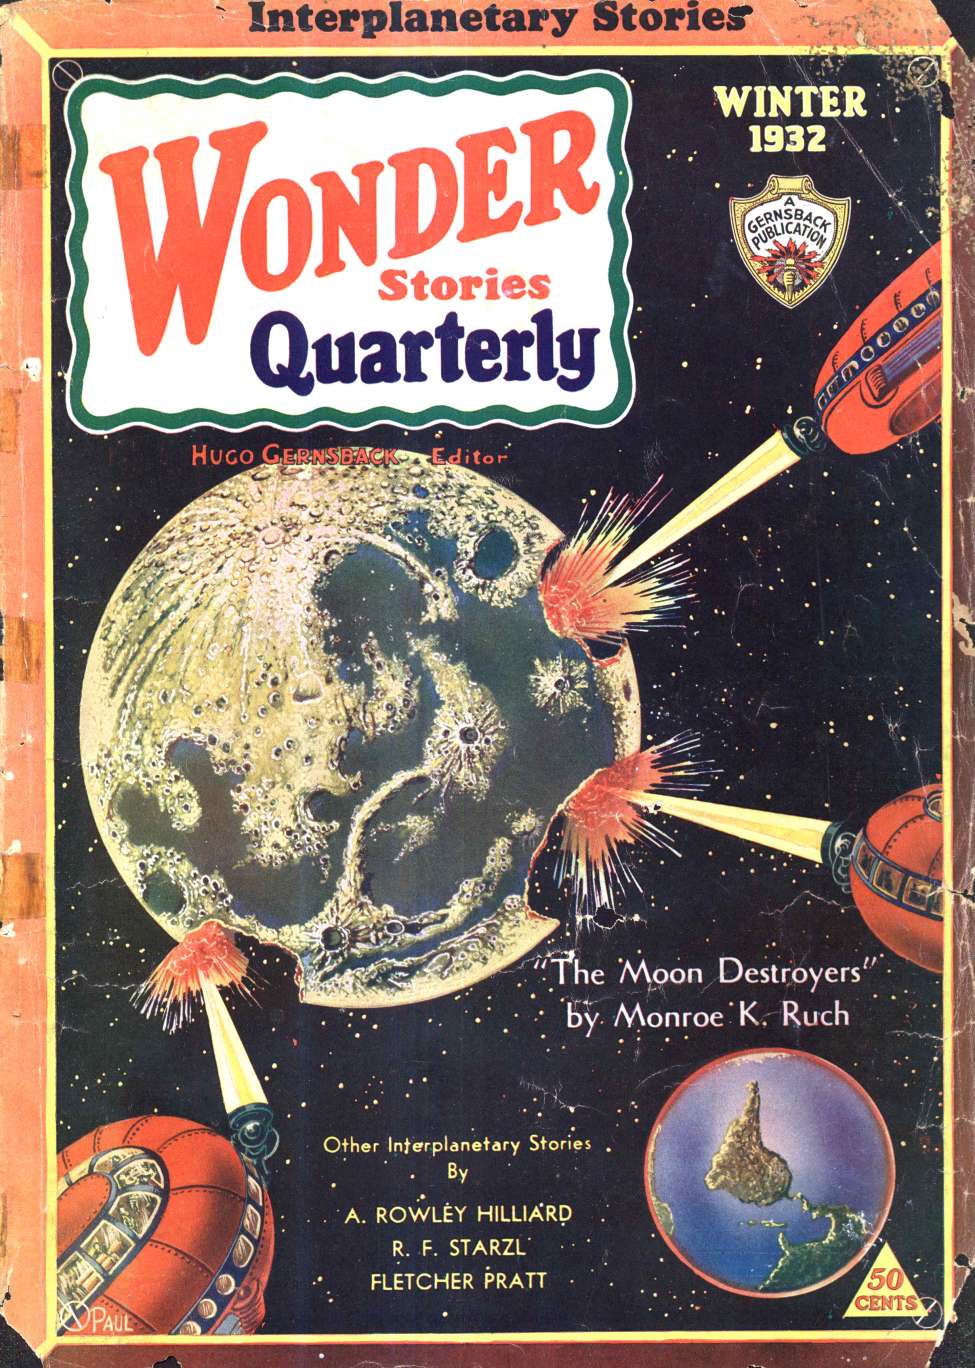 Book Cover For Wonder Stories Quarterly v3 2 - The Onslaught from Rigel - Fletcher Pratt